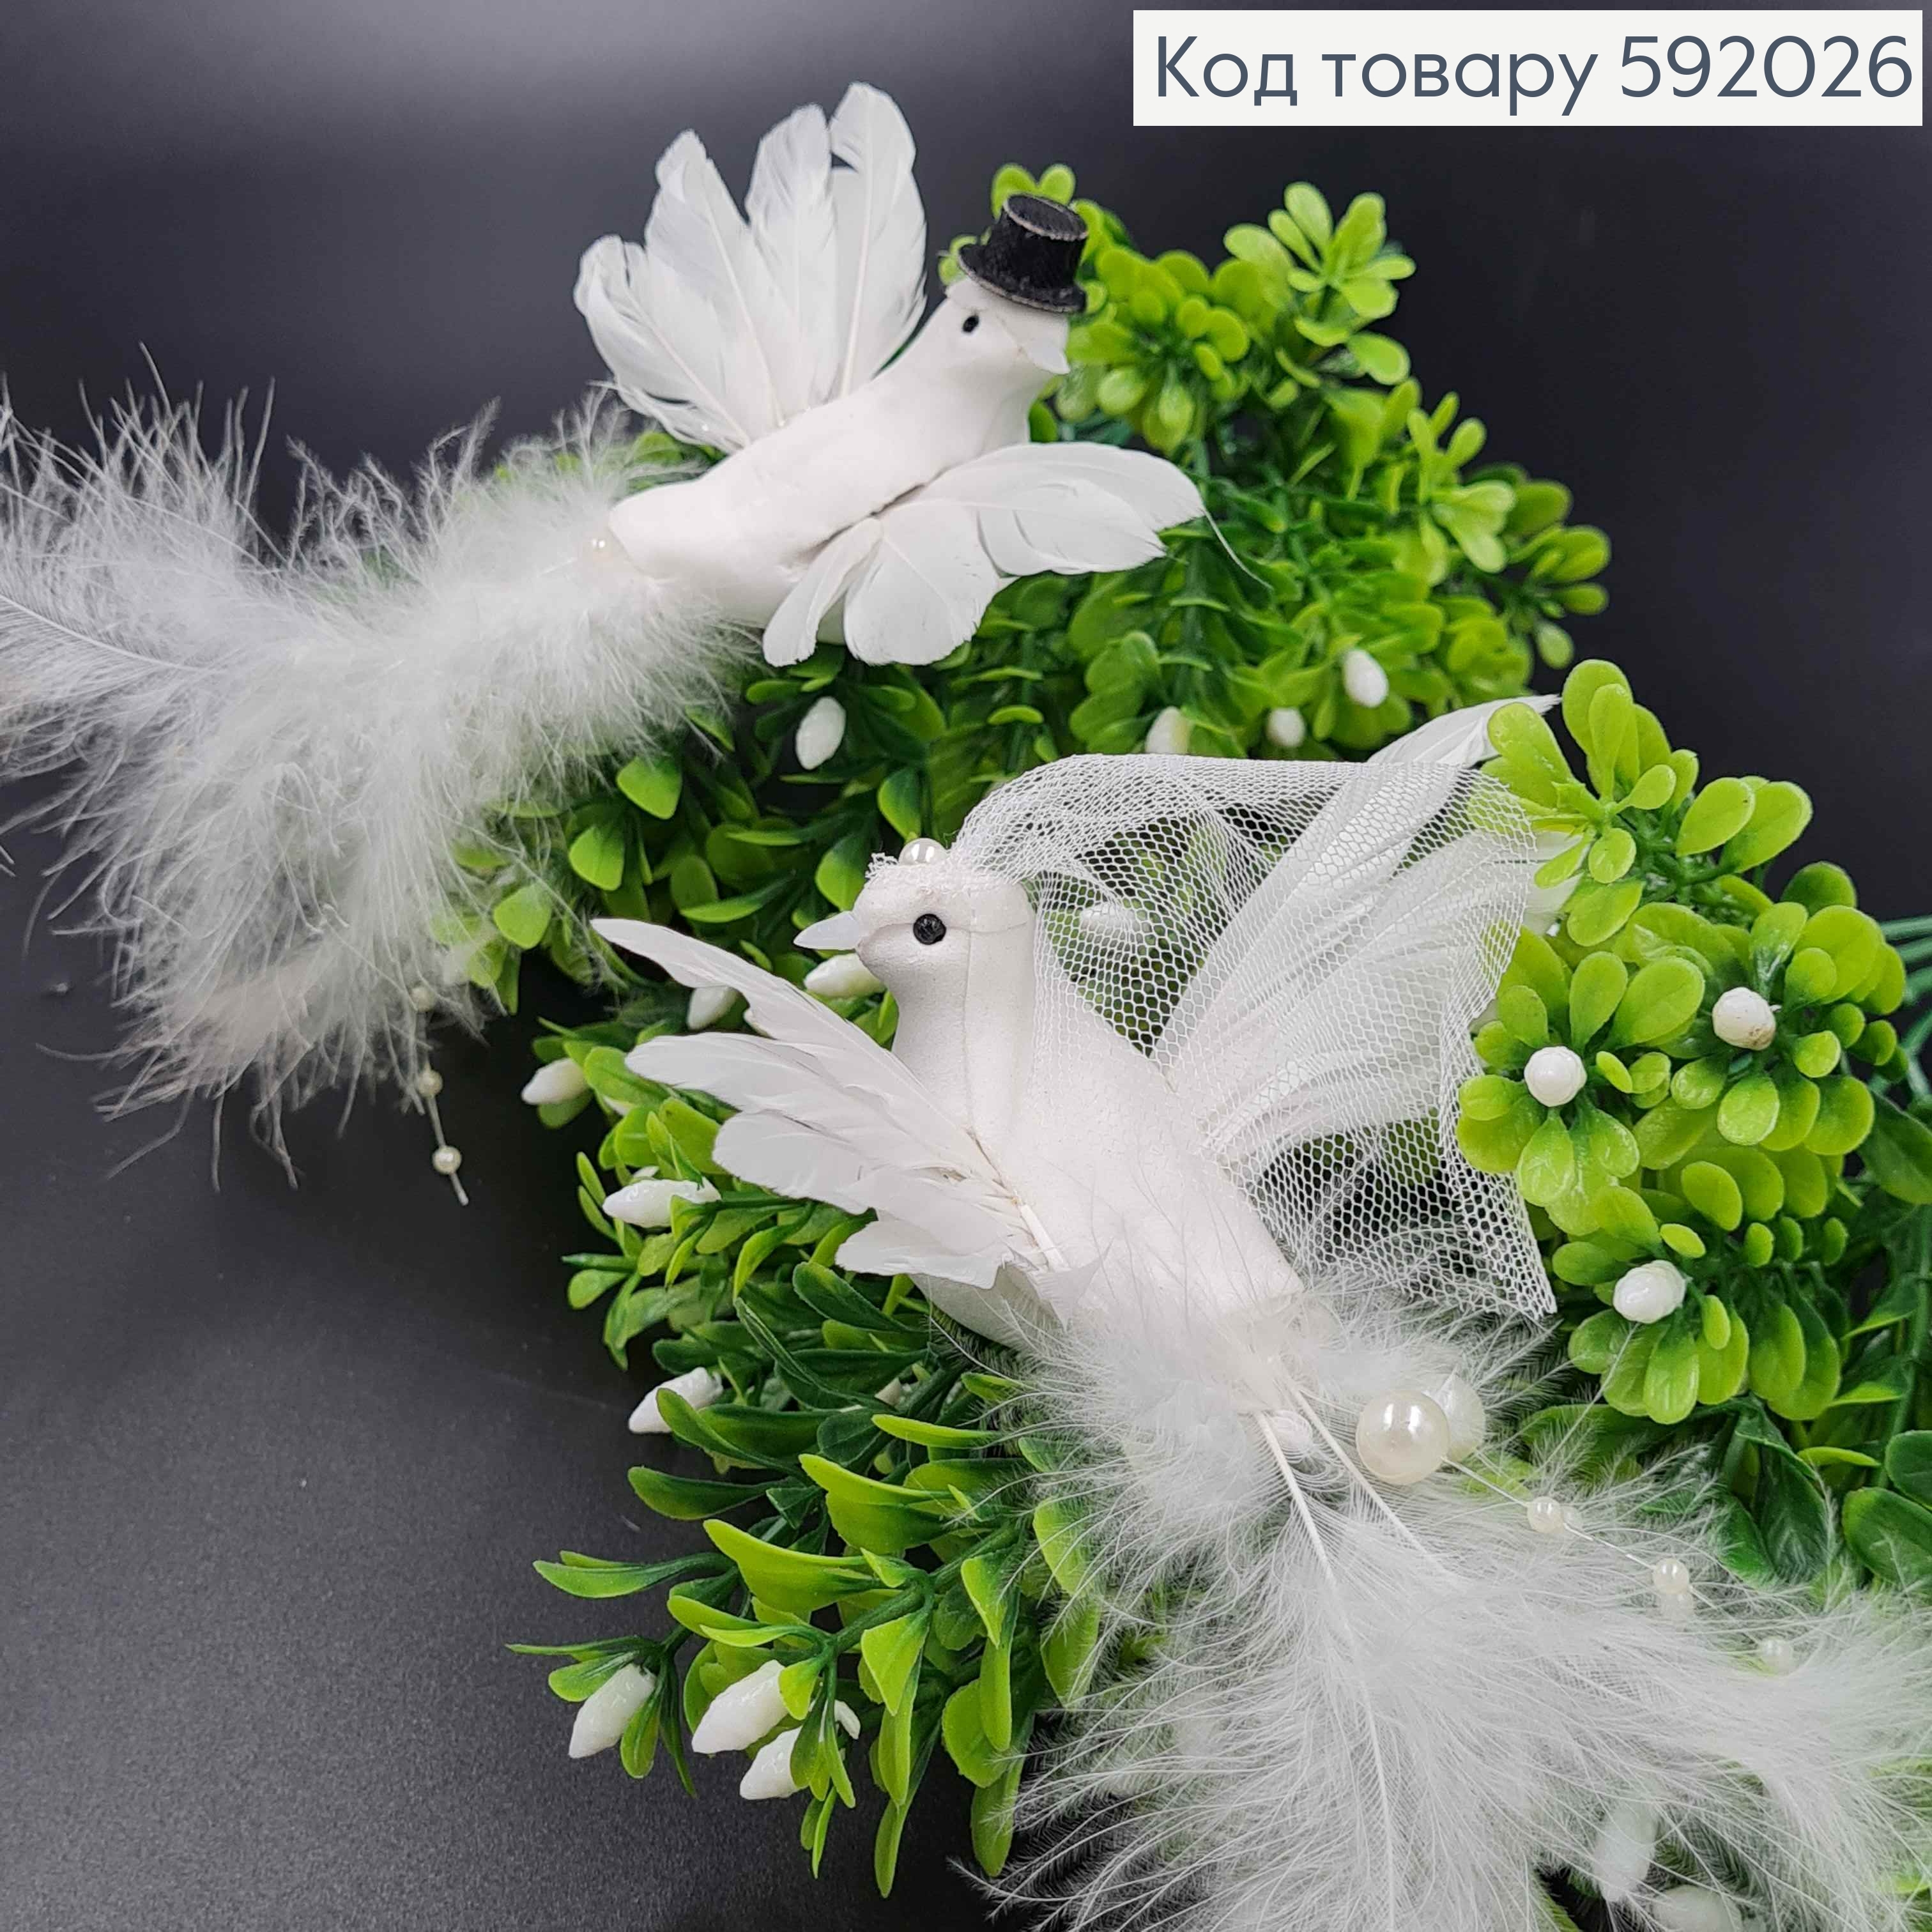 Флористична заколка,14см,  наречені ГОЛУБ ТА ГОЛУБКА (ціна з 2шт) білі з пір'я з перлинками, Польща 592026 фото 2